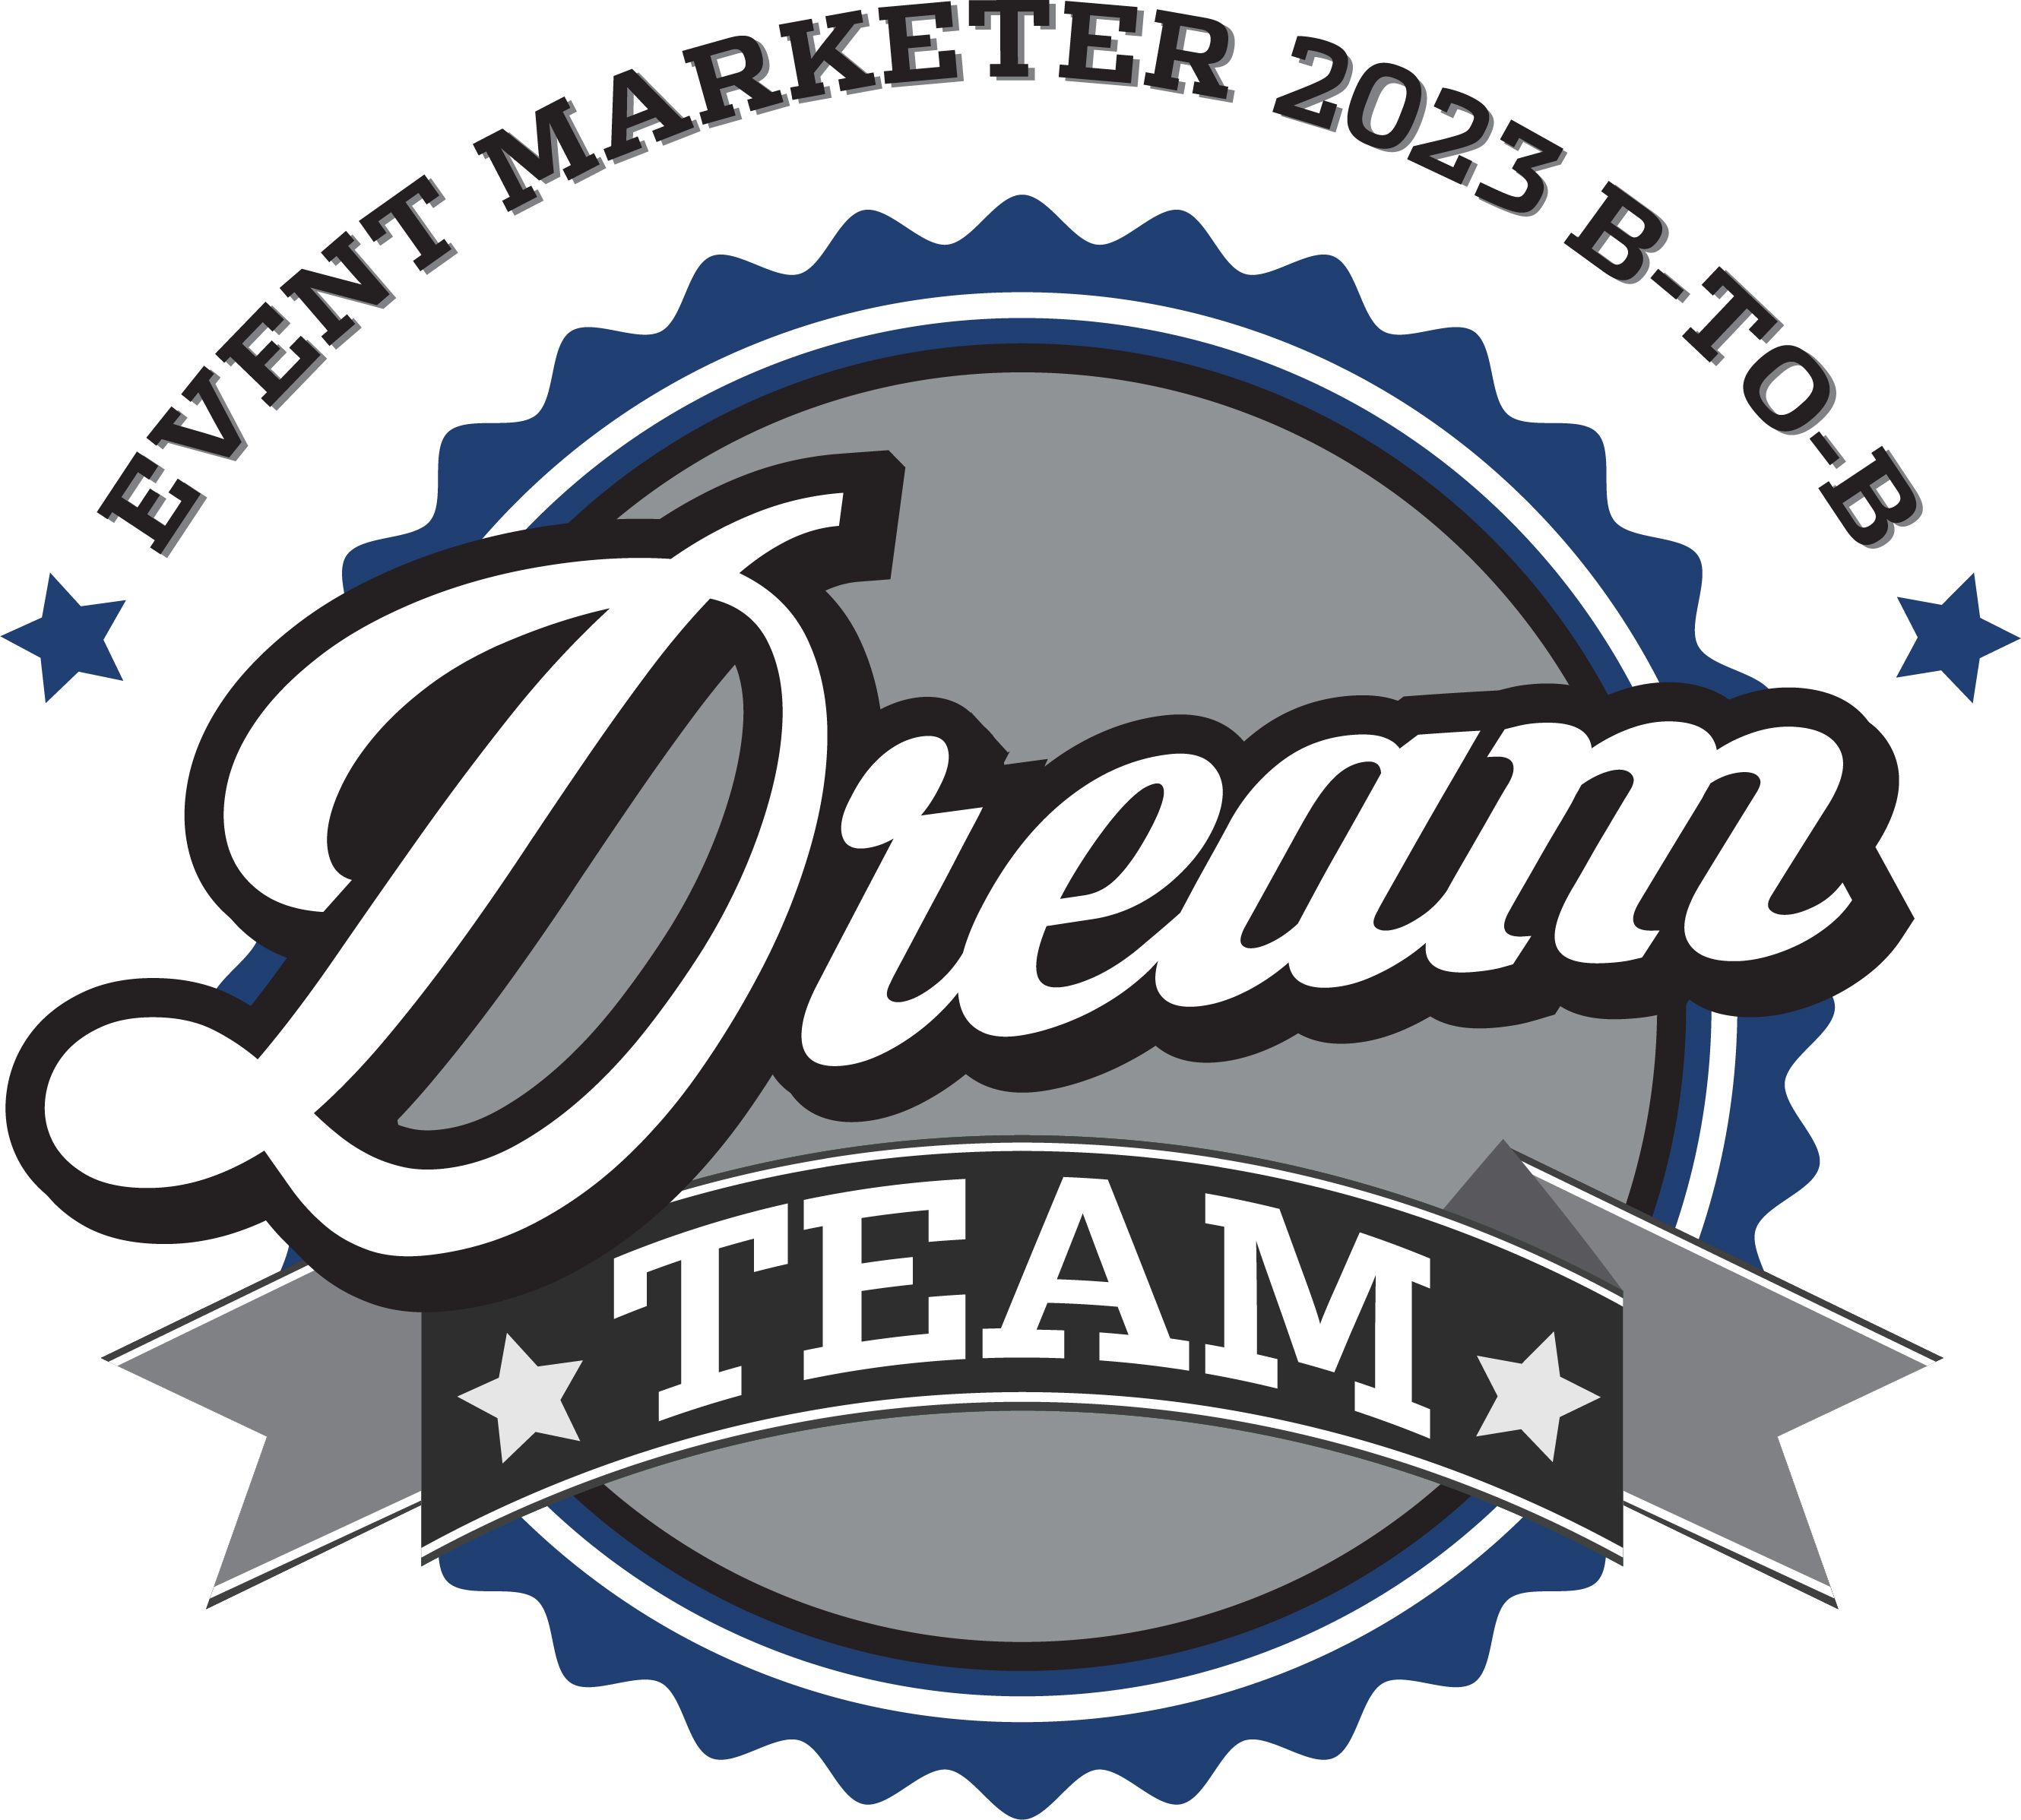 DreamTeam Vector Logo - Download Free SVG Icon | Worldvectorlogo